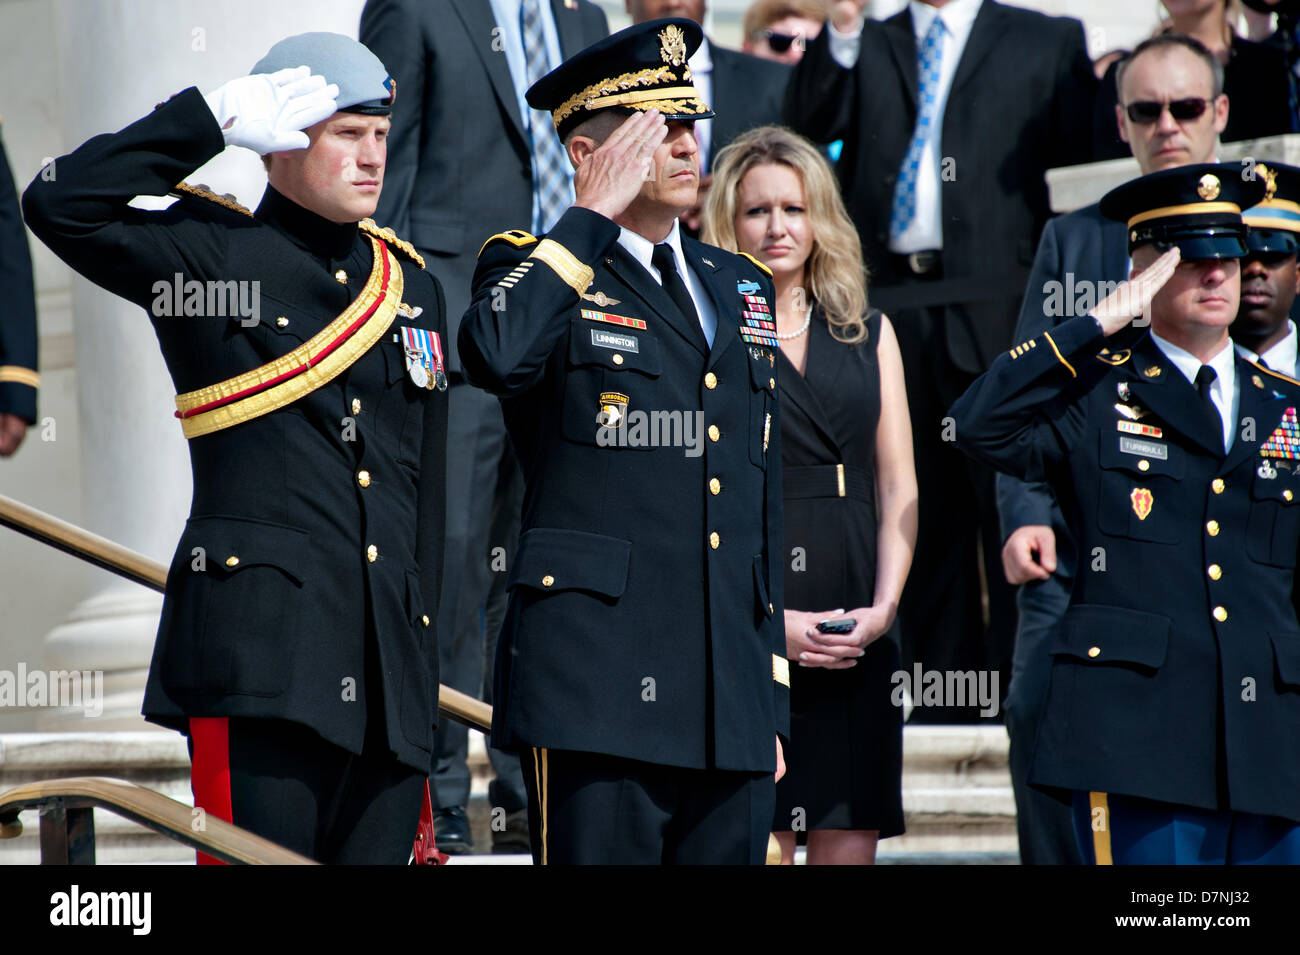 Son Altesse Royale le prince Harry de galles et le Major-général Michael Linnington militaires durant la lecture de l'hymne national américain et britannique sur la tombe des inconnues dans le Cimetière National d'Arlington, le 10 mai 2013 à Arlington, VA. Banque D'Images